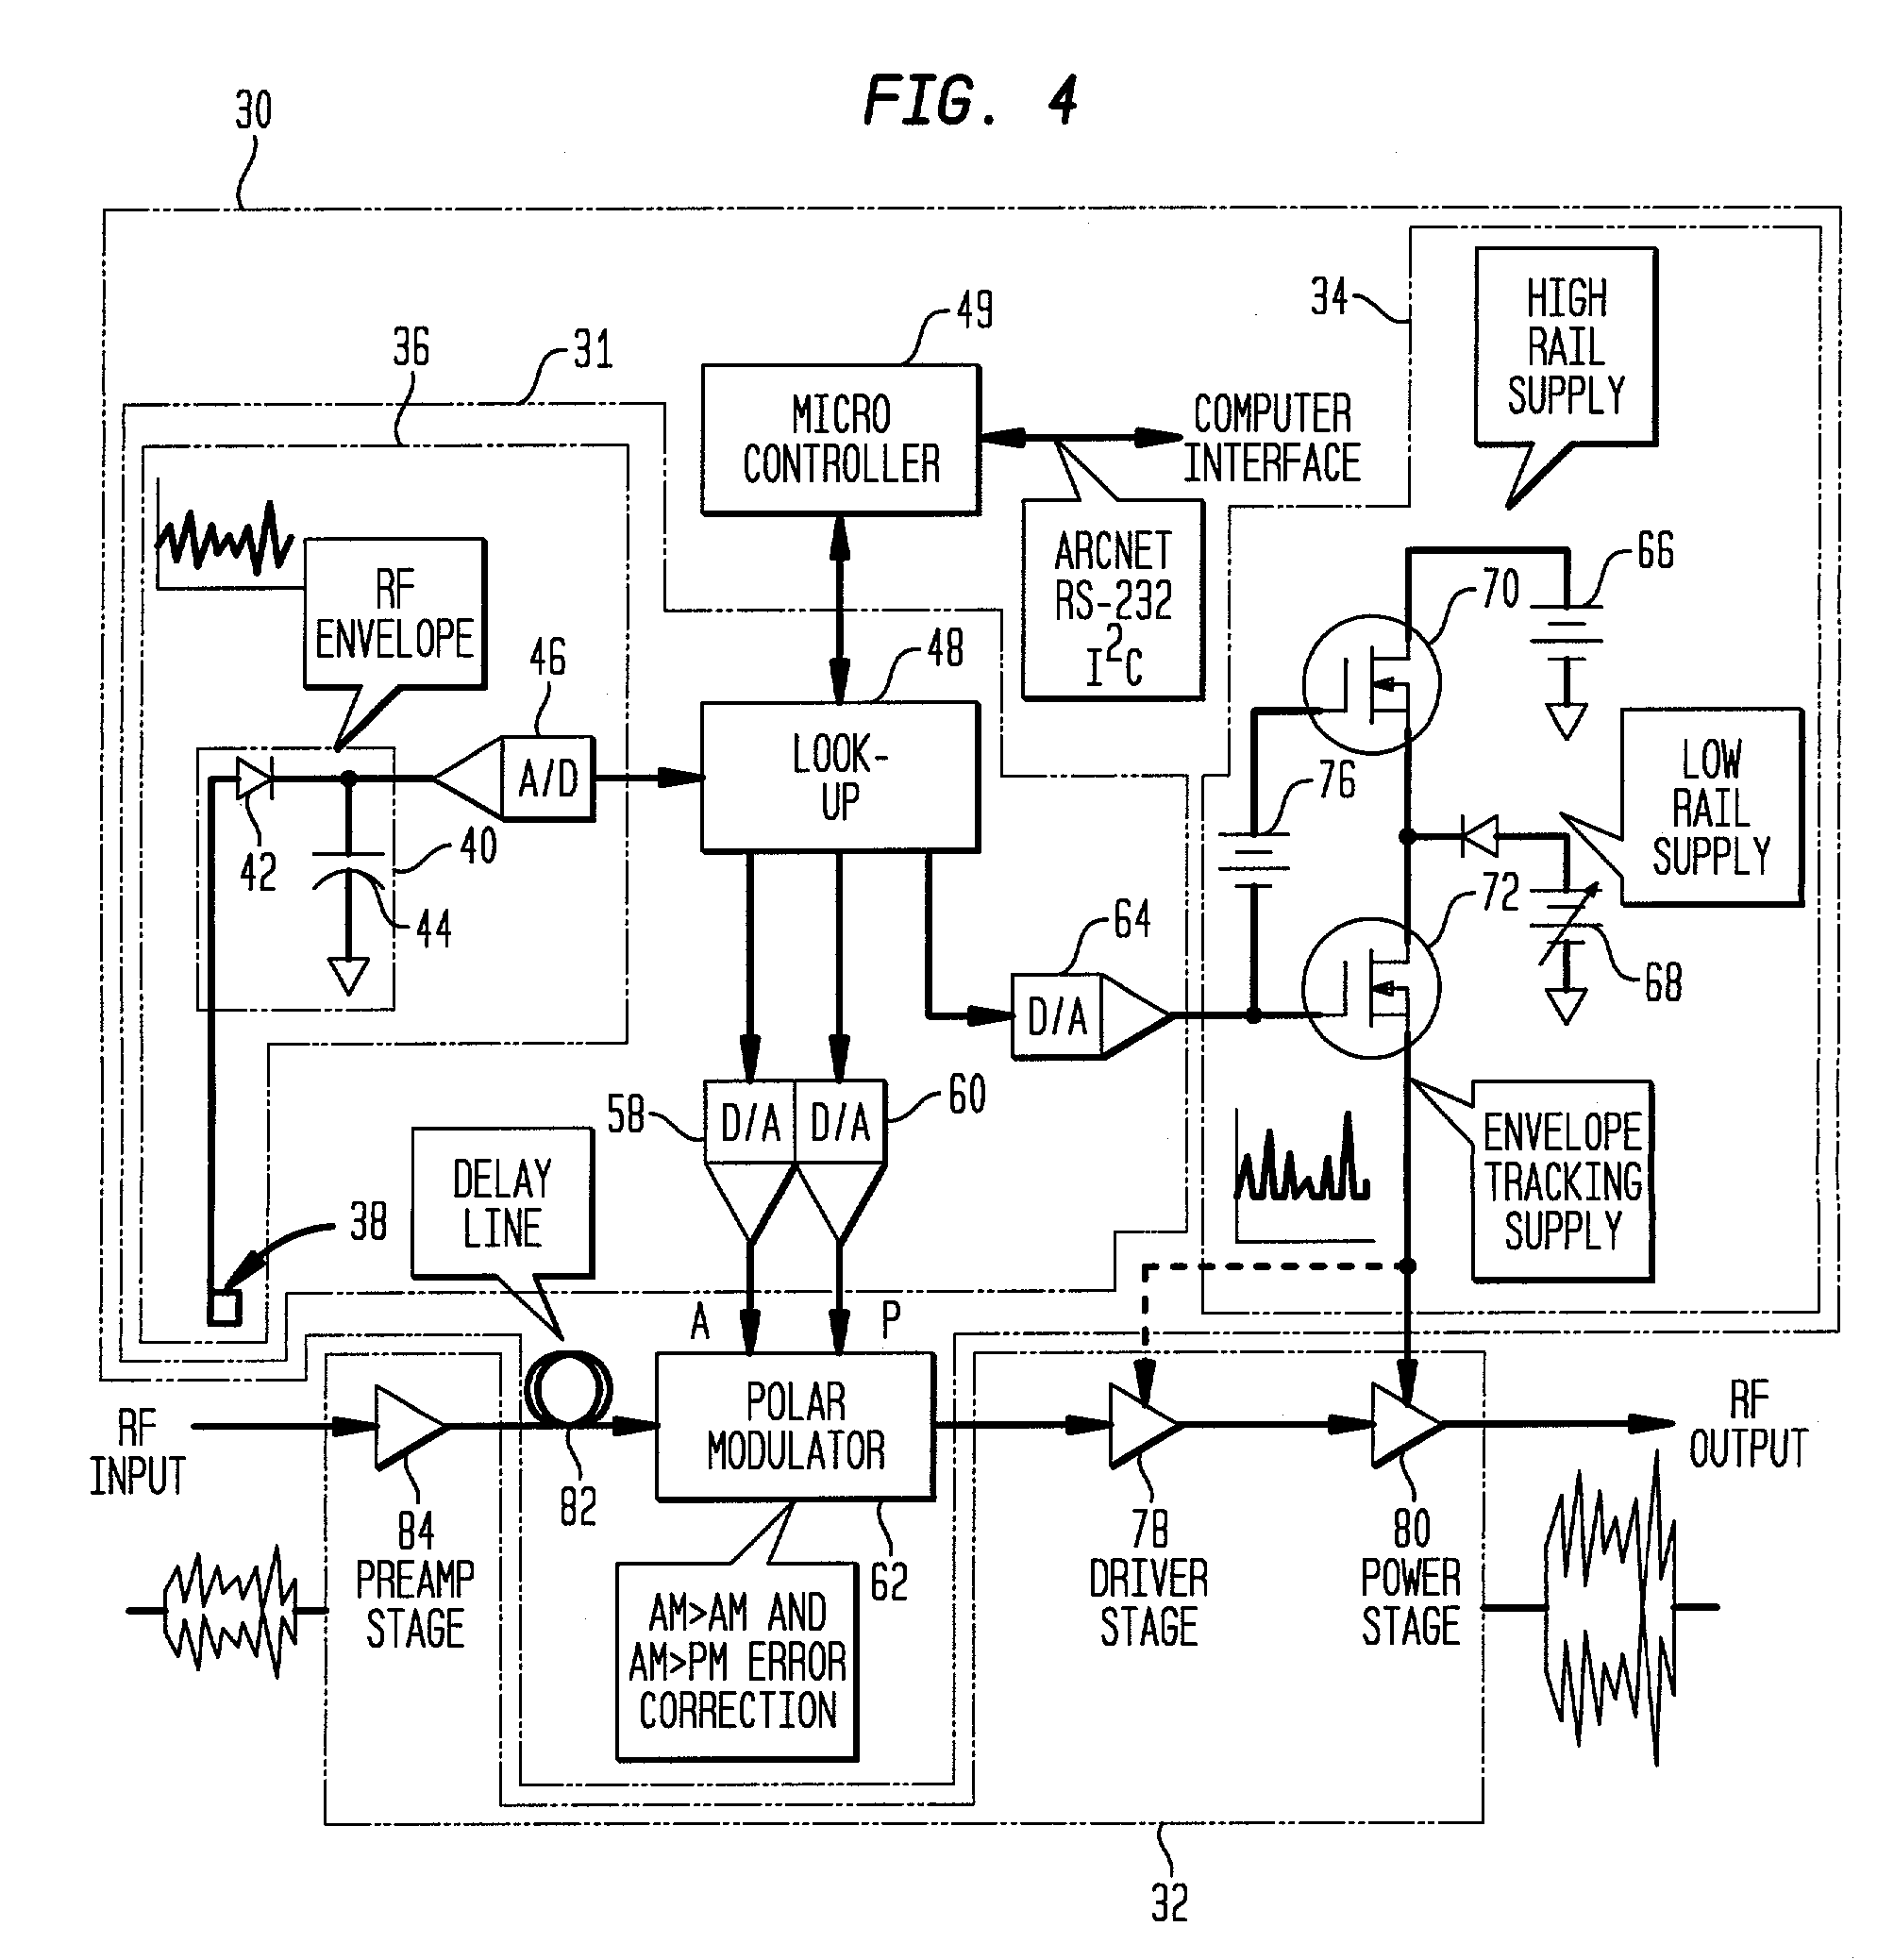 Controller for an RF power amplifier